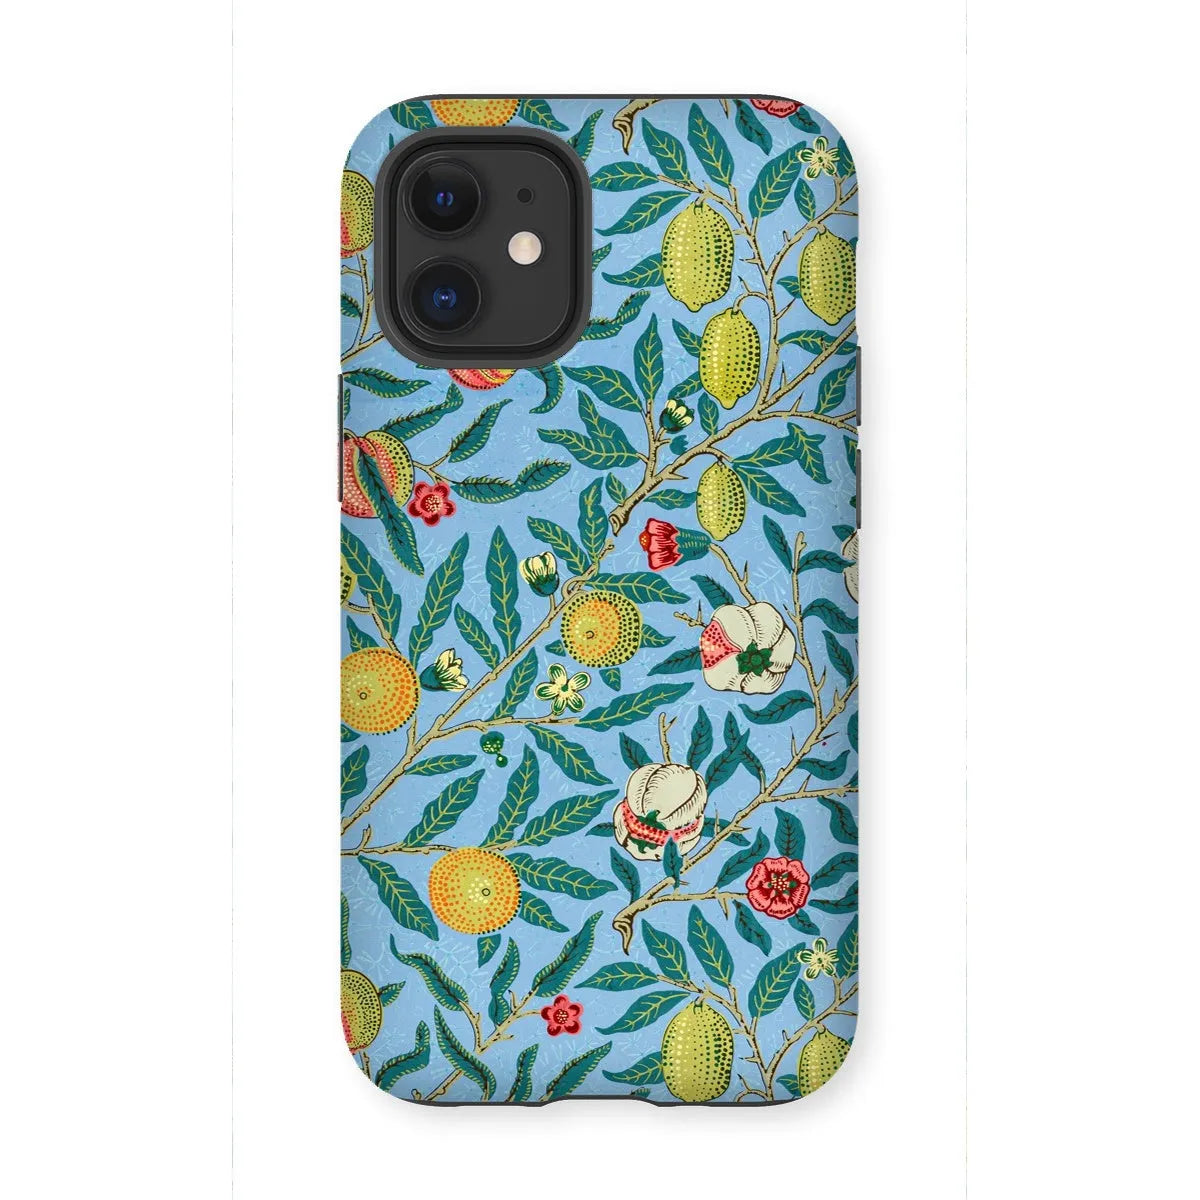 Four Fruits Aesthetic Art Phone Case - William Morris - Iphone 12 Mini / Matte - Mobile Phone Cases - Aesthetic Art